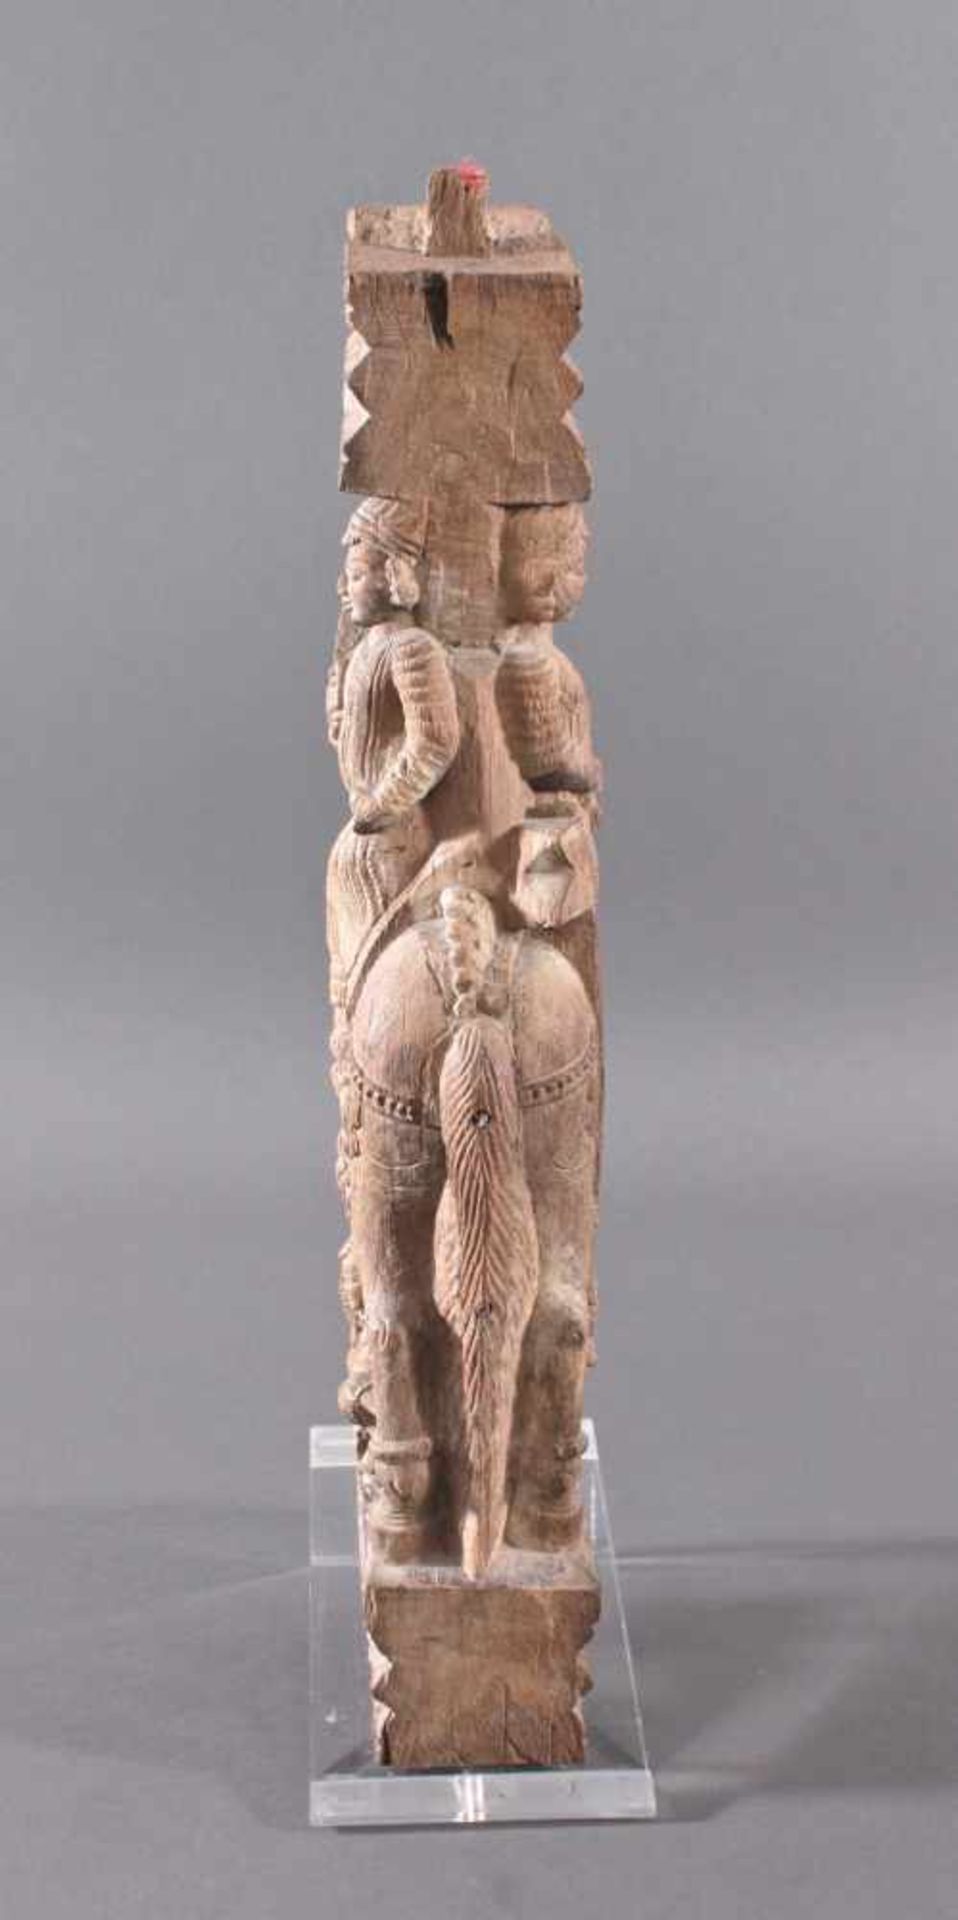 Holzplastik eines Reiters auf einem Pferd, Indien wohl Orissa 15./16. Jh. - Image 4 of 13